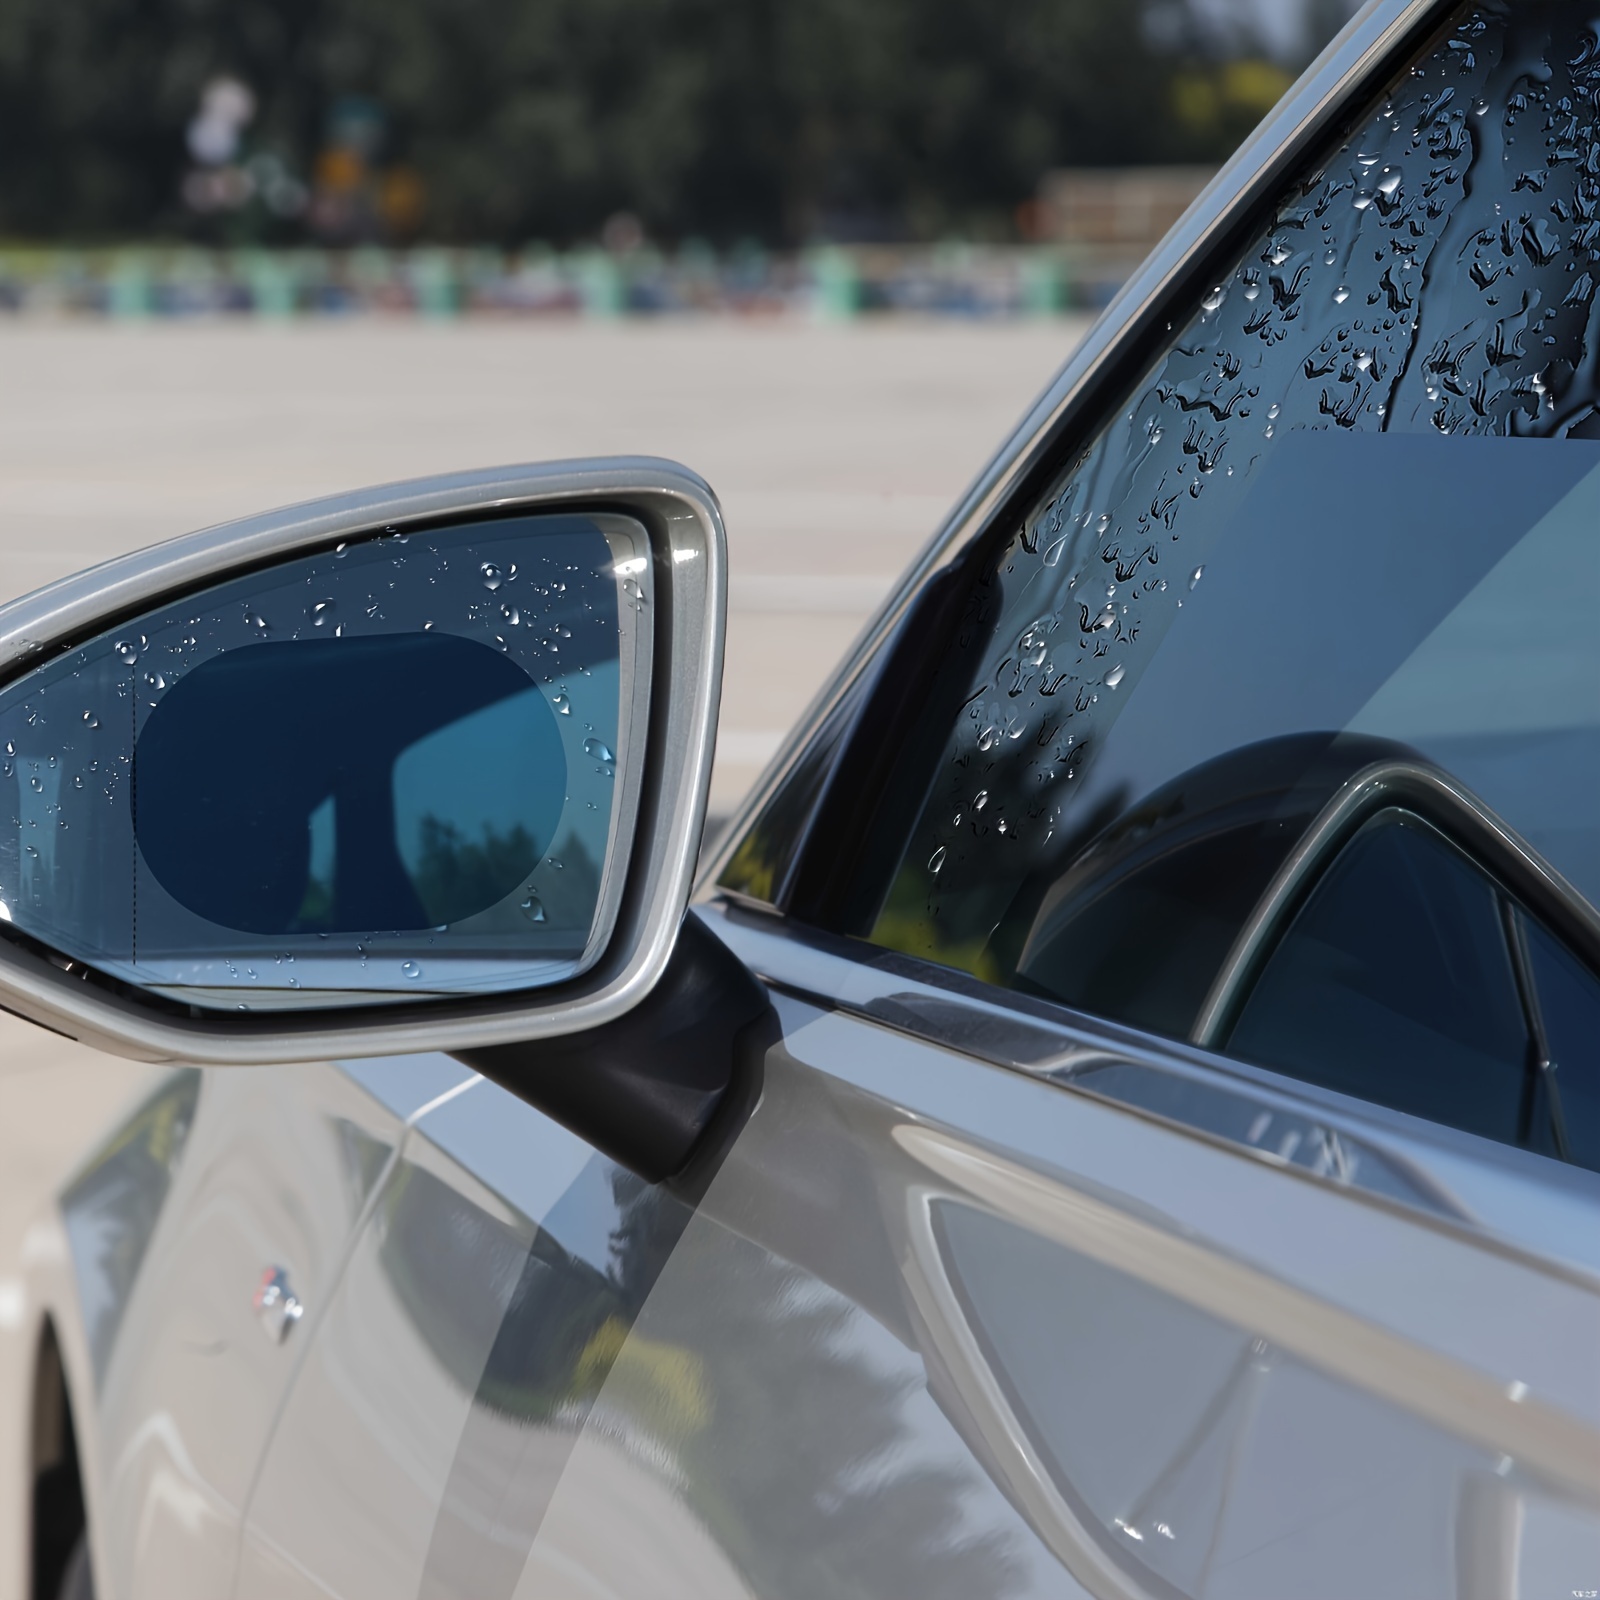  Asudaro Rétroviseur de voiture sourcils, 2 pièces housses anti- pluie d'automobile, miroir étanche à la pluie rétroviseur de voiture housse  de protection étanche pour housses de miroir de voiture